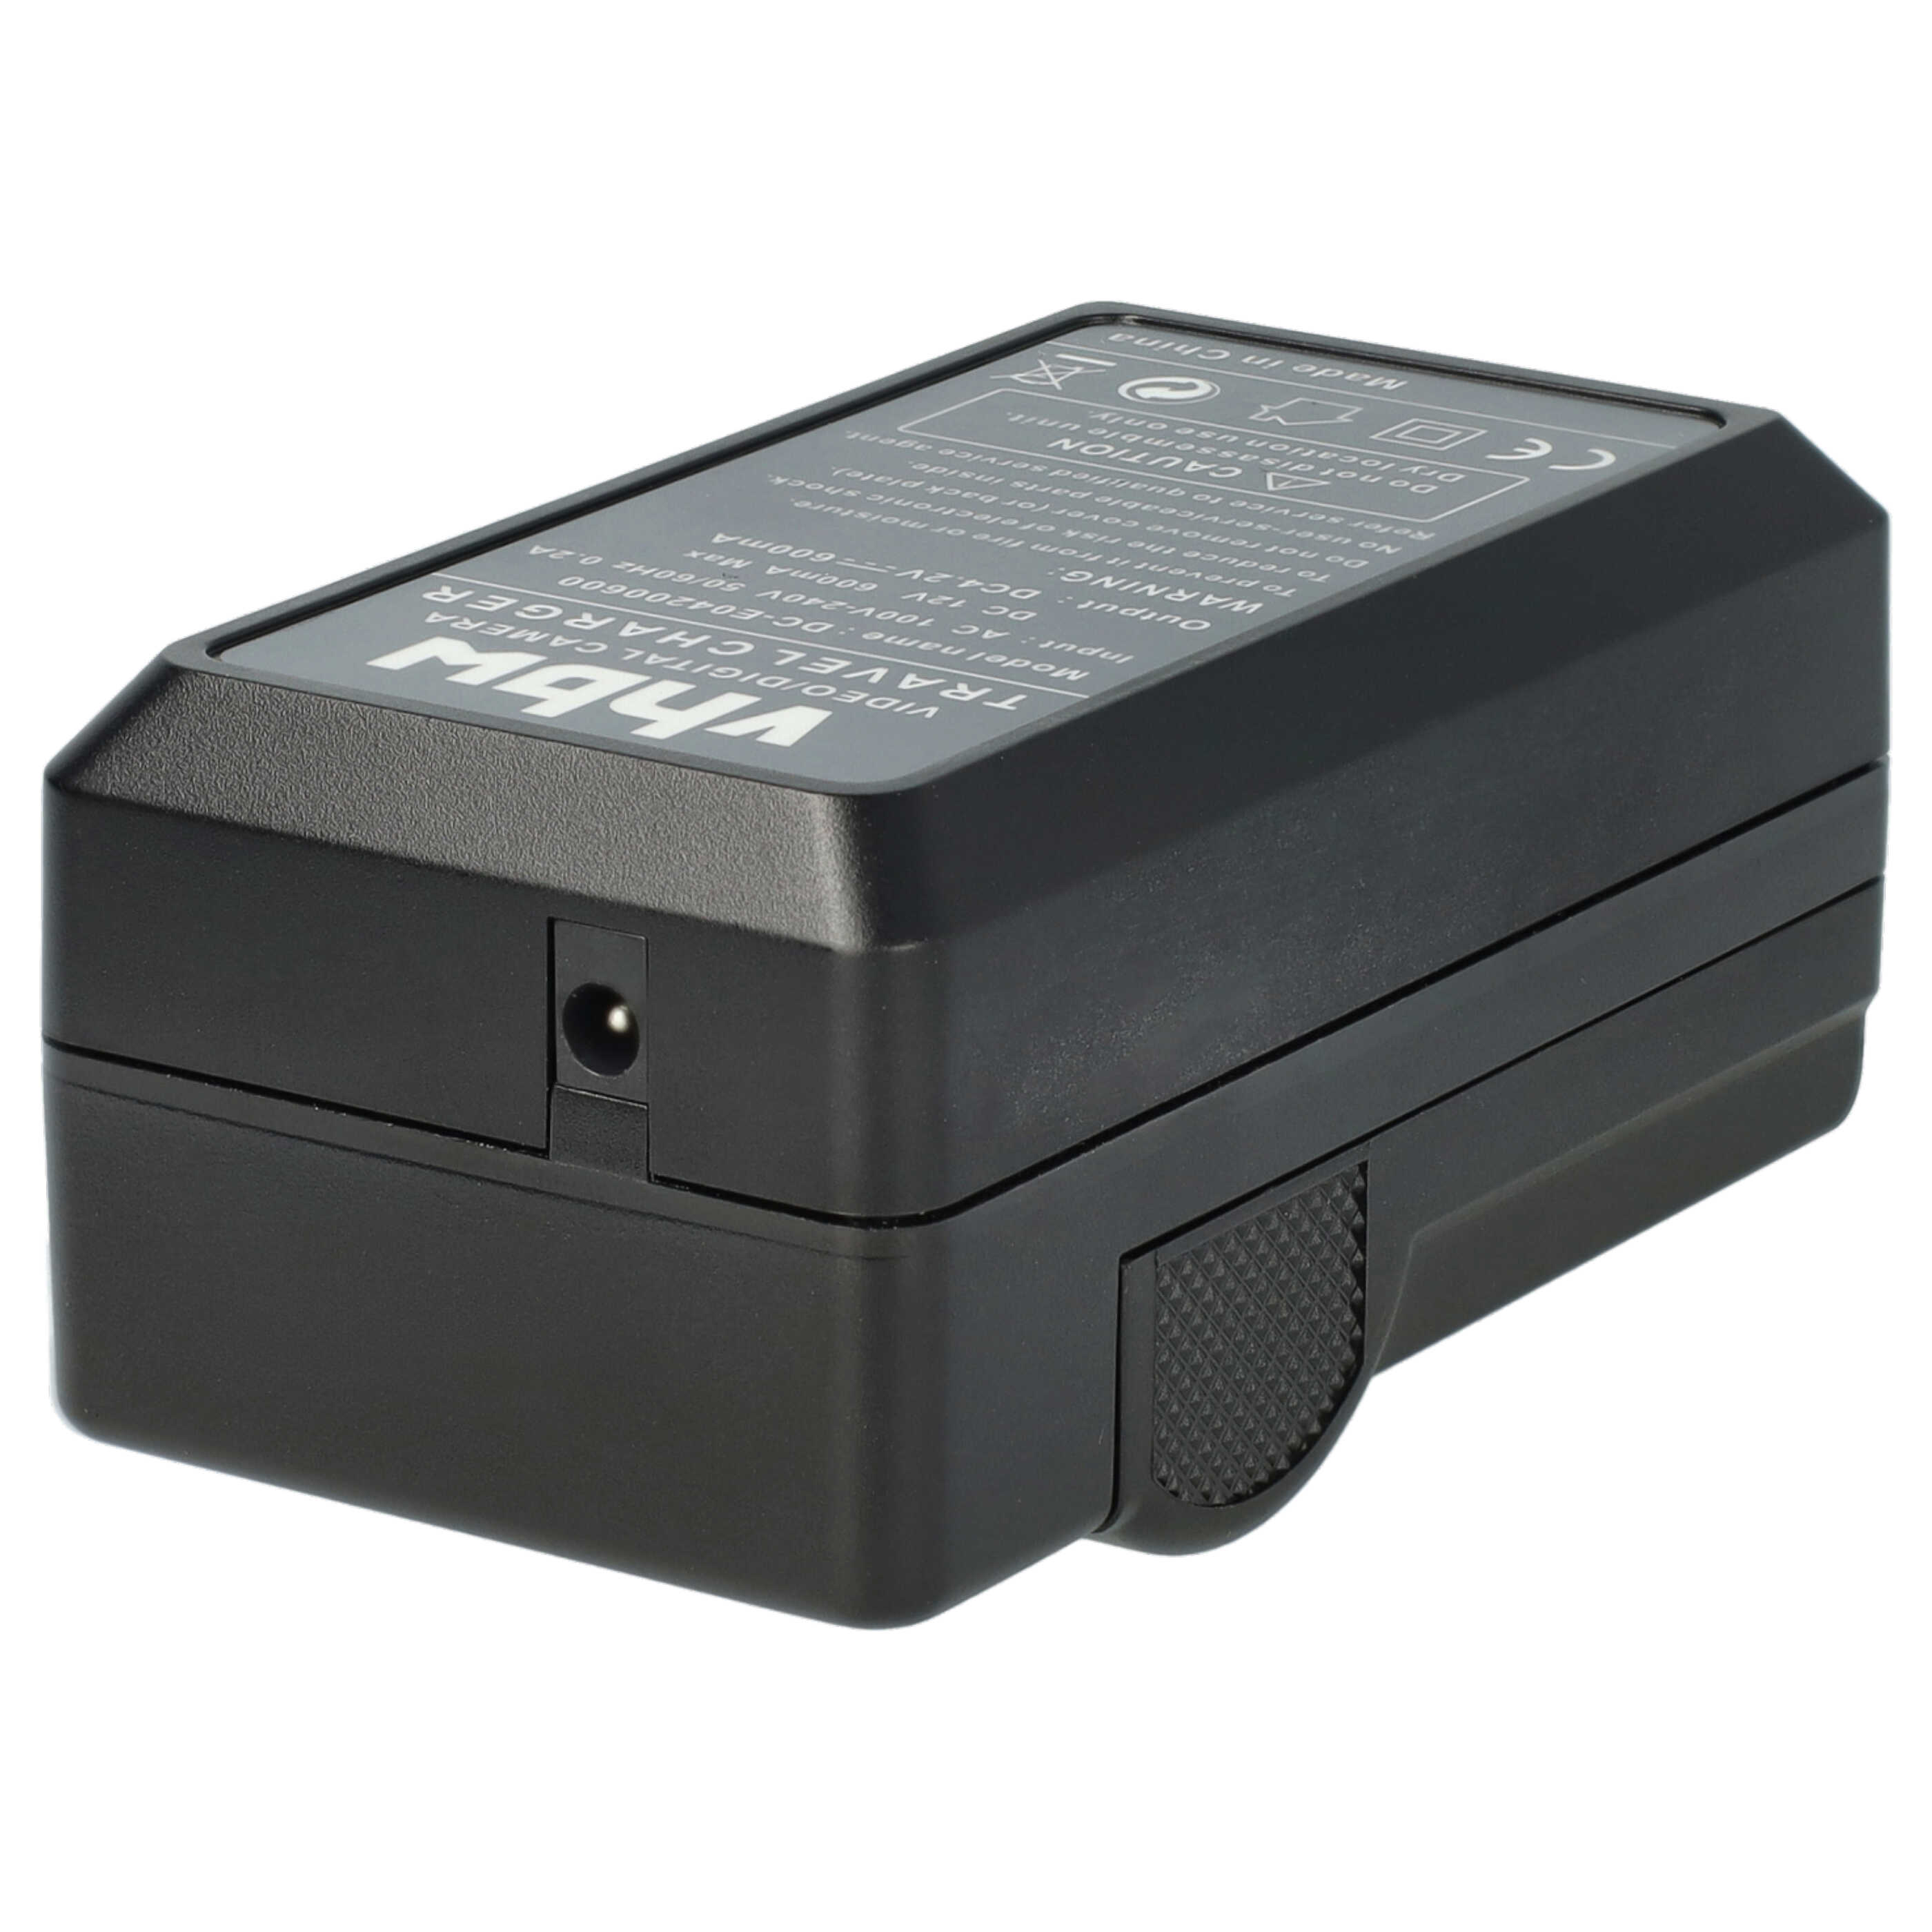 Caricabatterie + adattatore da auto per fotocamera V-Lux - 0,6A 4,2V 88,5cm